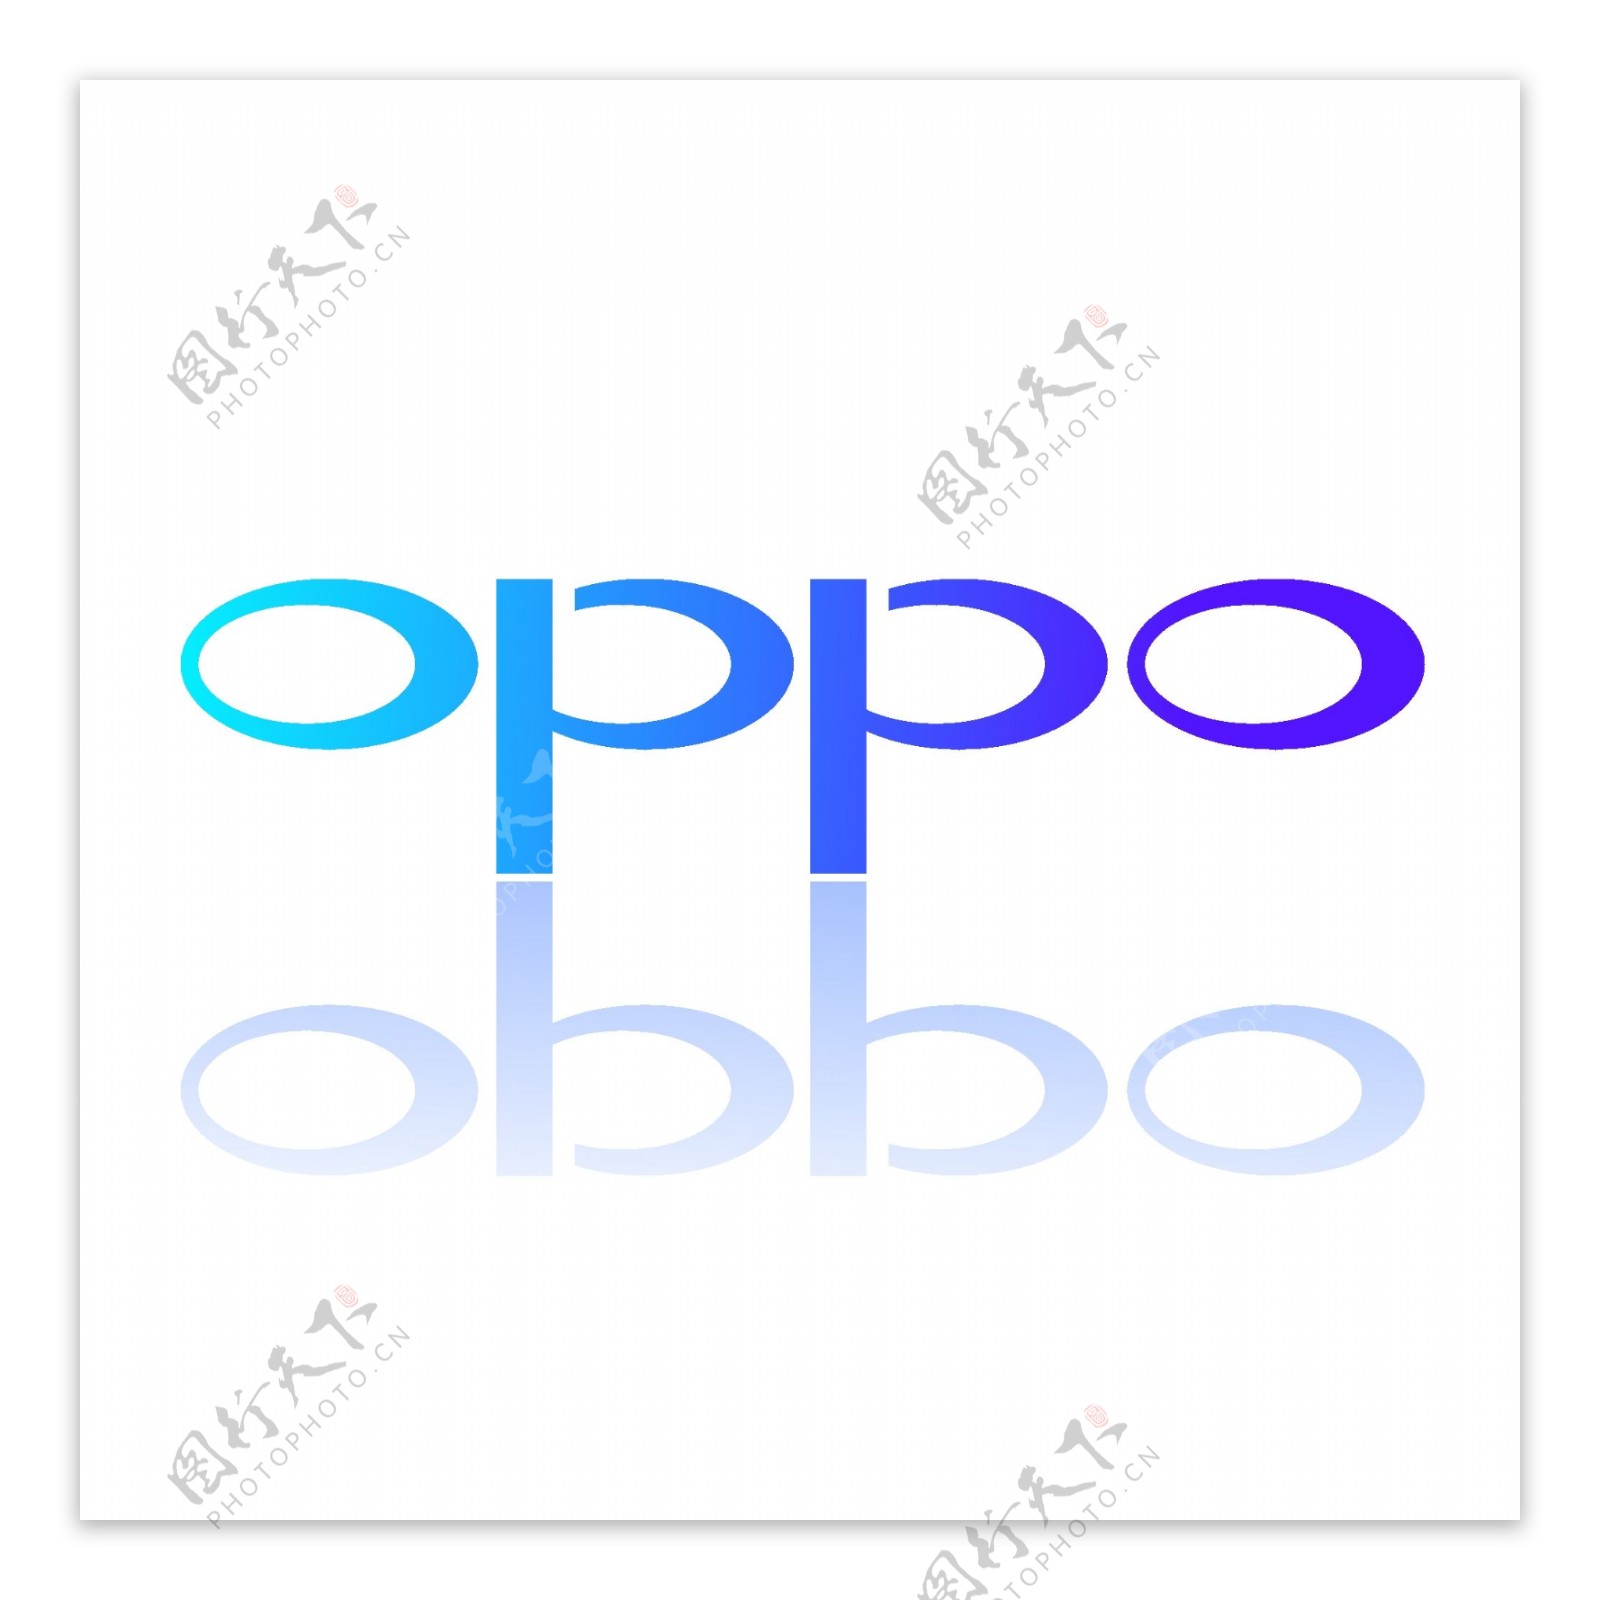 中国手机行业品牌OPPO